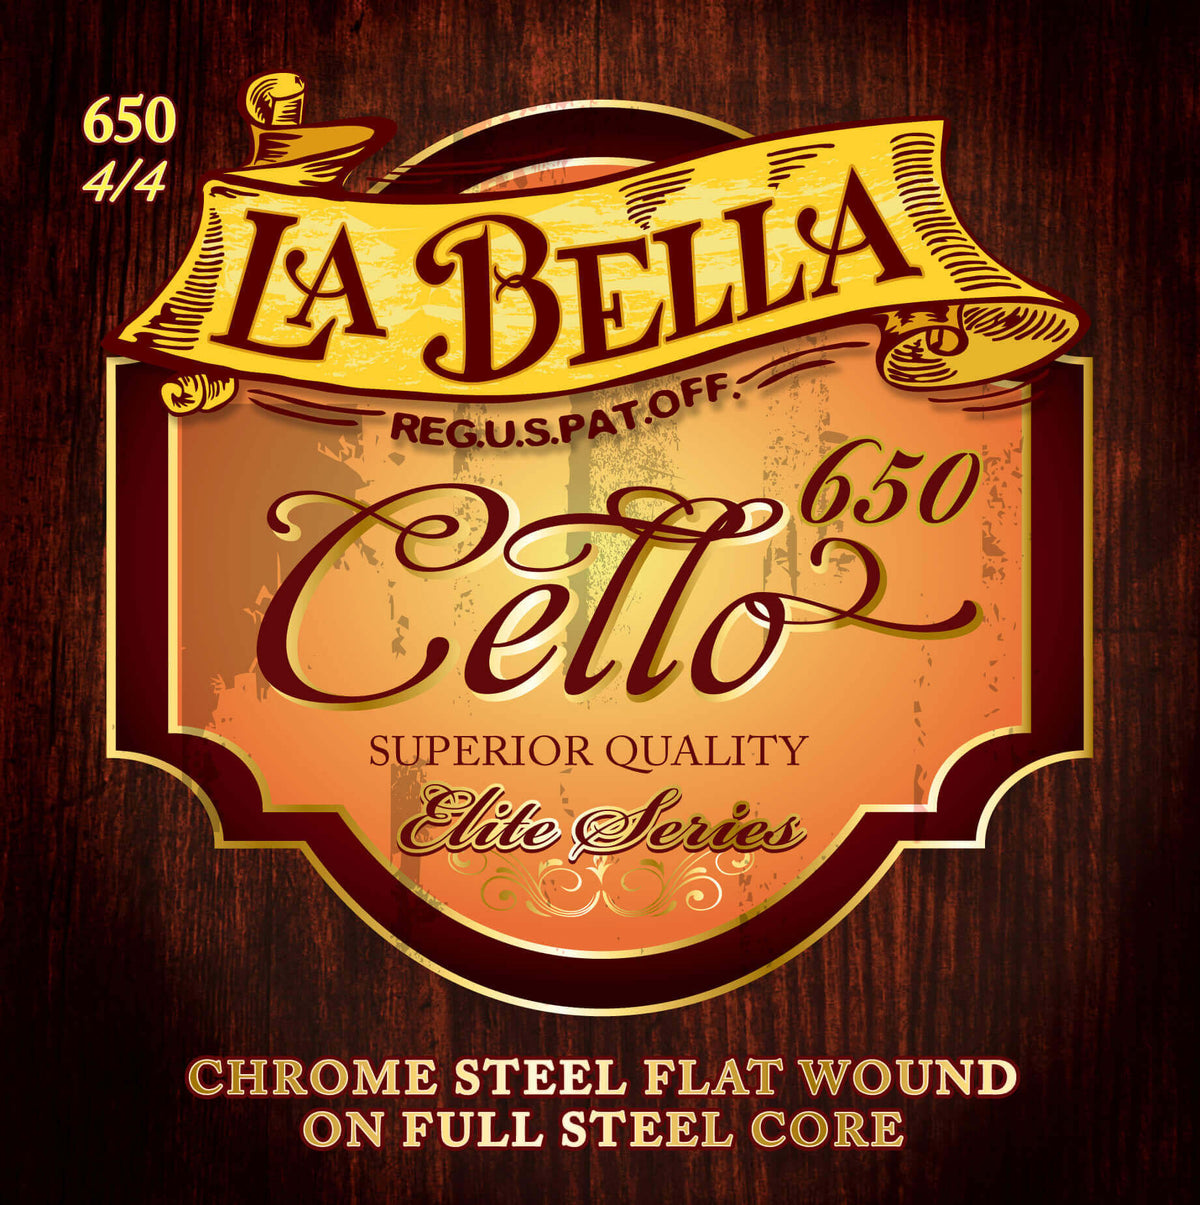 Labella Elite Cello C String